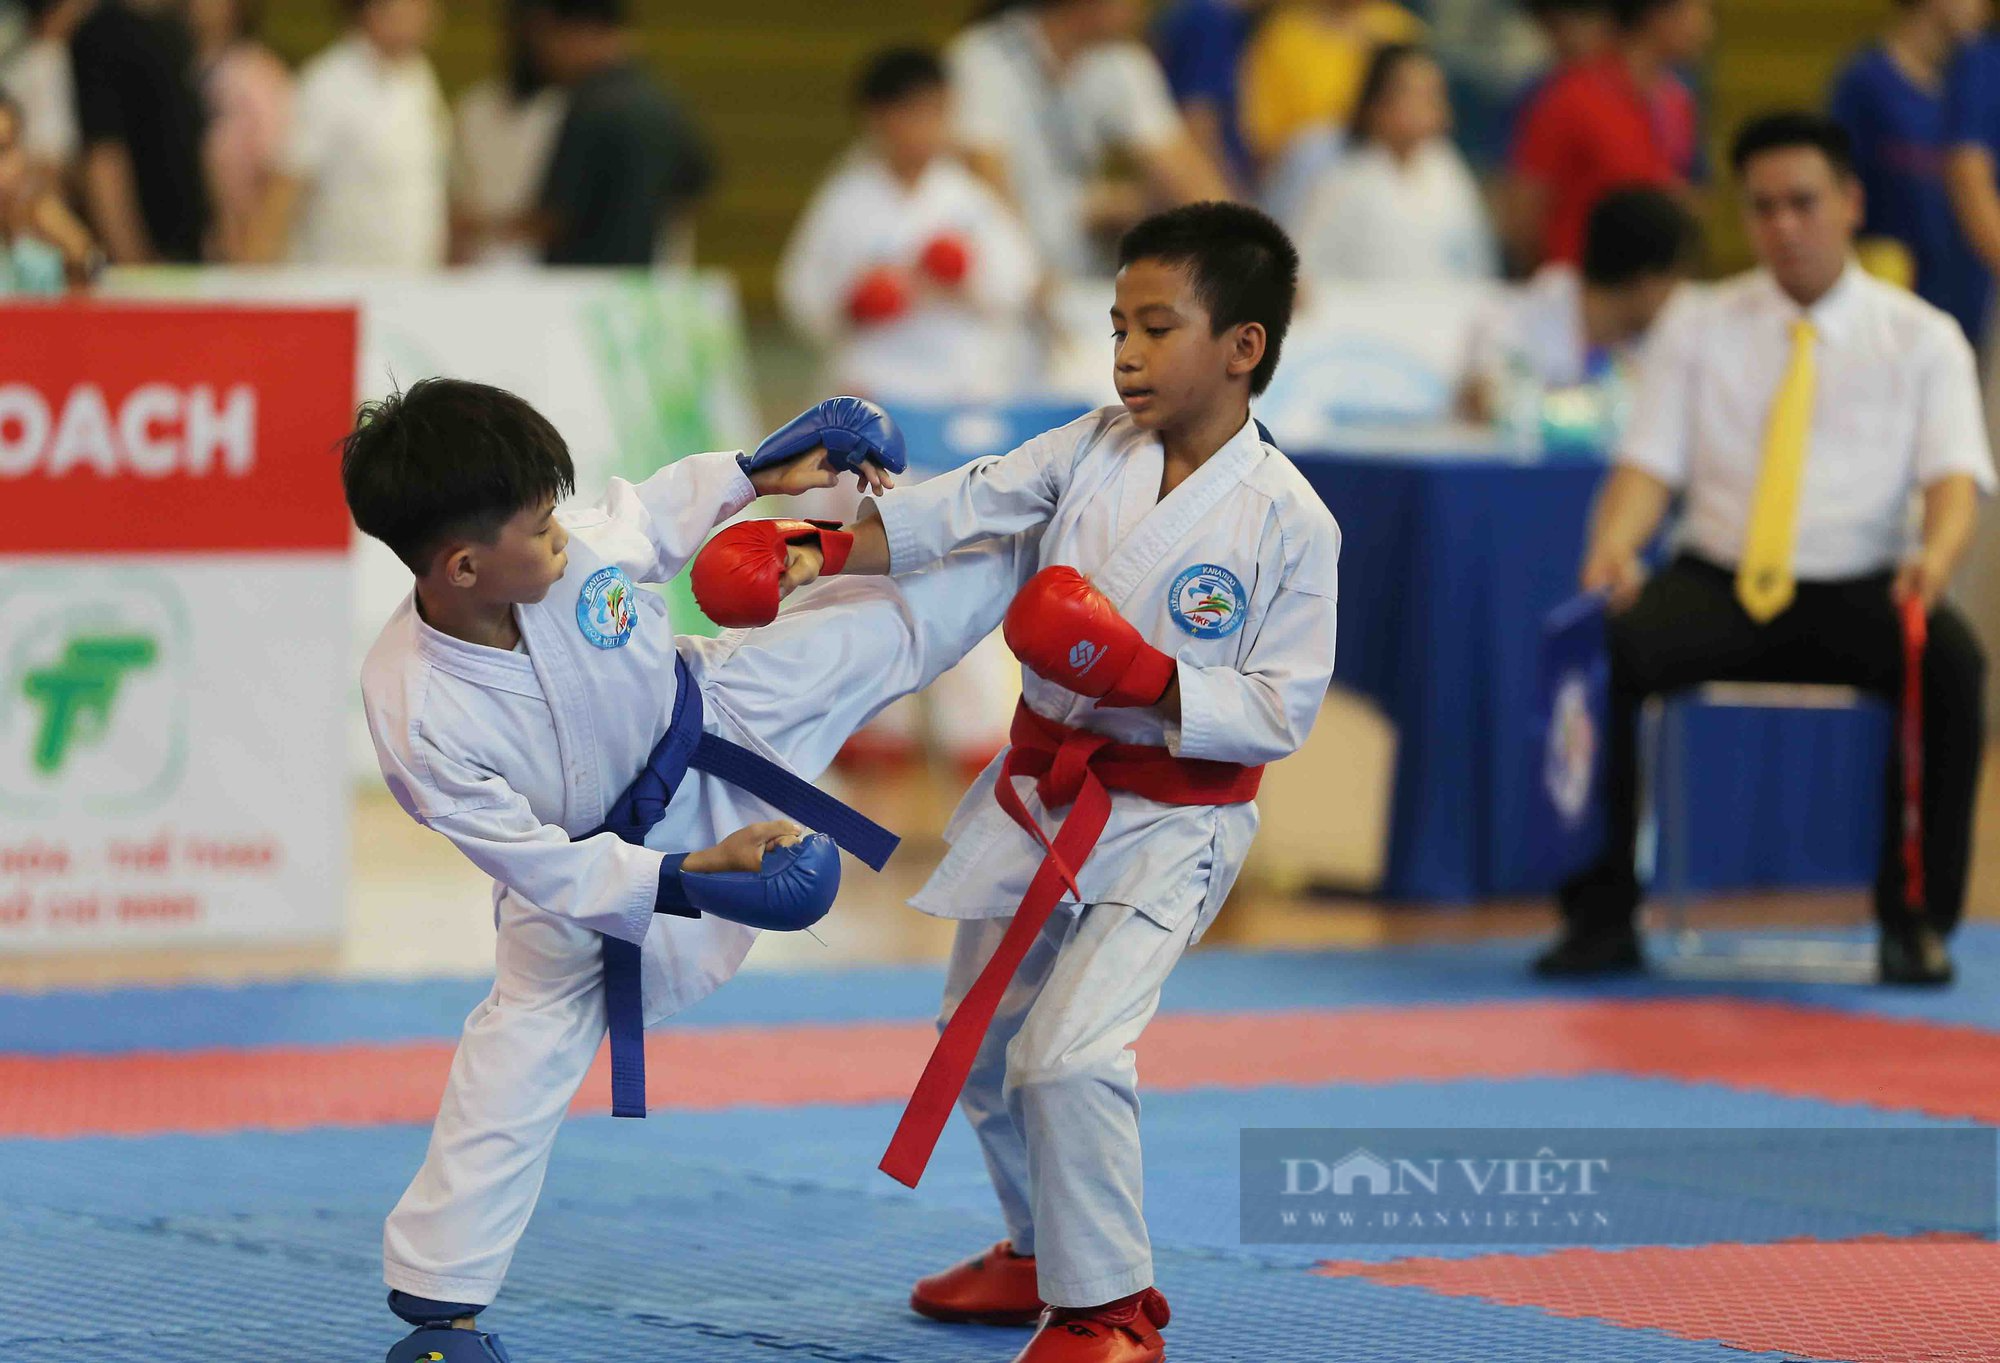 Ấn tượng những màn trình diễn siêu cute của các võ sĩ karate nhí - Ảnh 14.